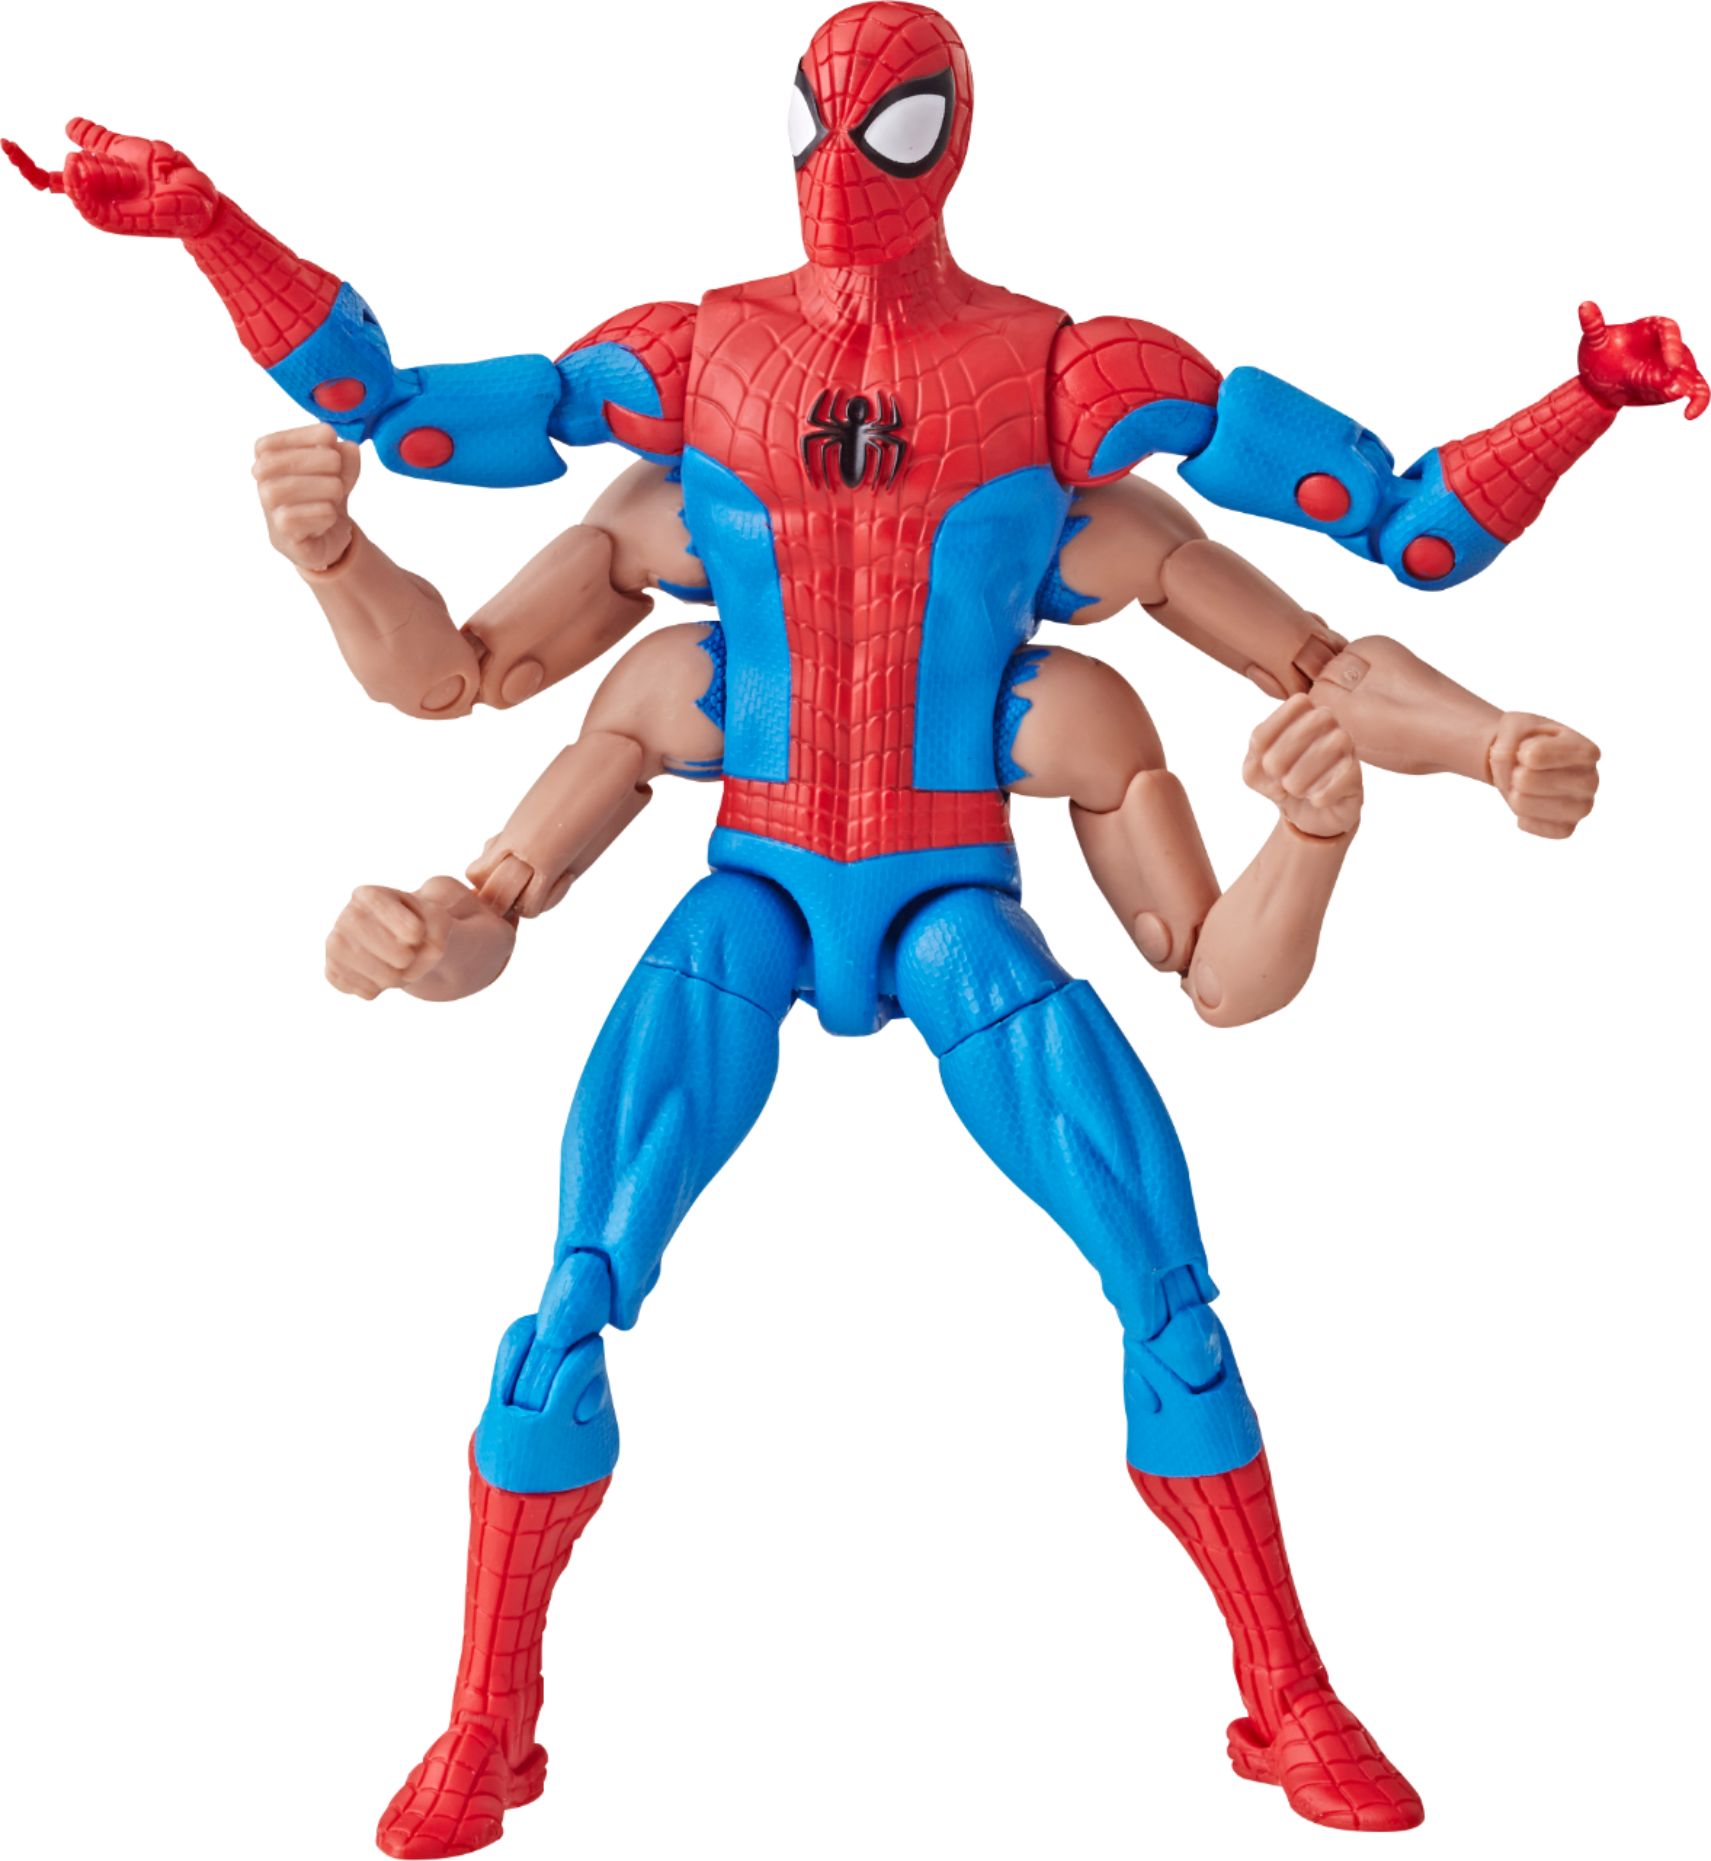 all marvel legends spider man figures